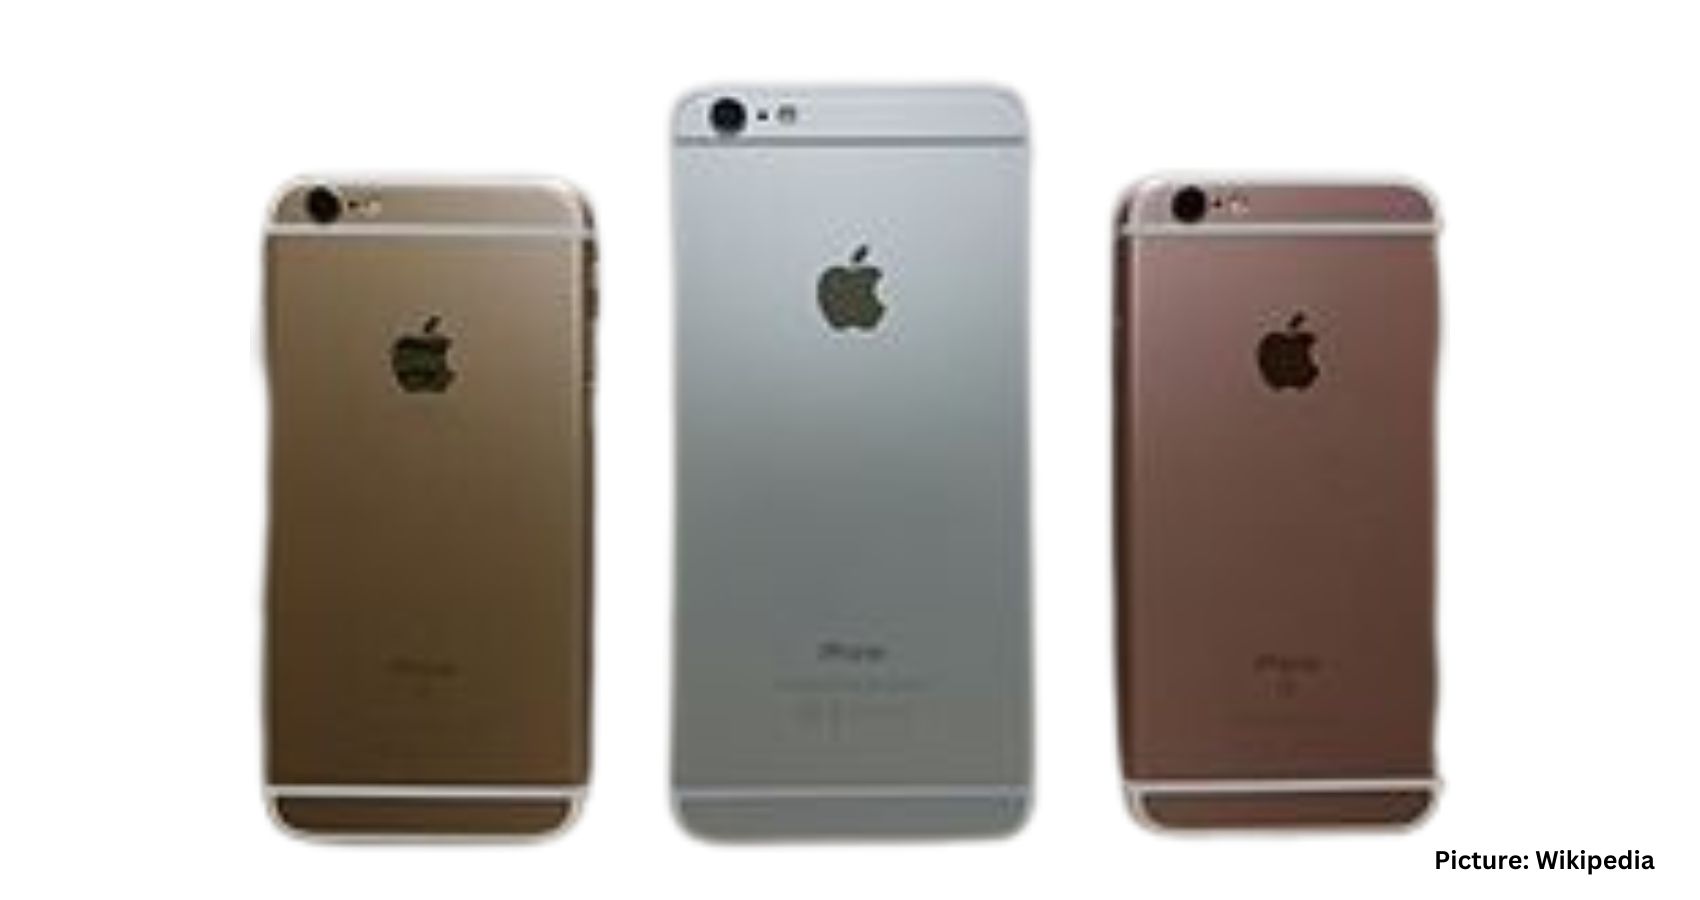 Apple’s iPhone Sales Soar to $1.95 Trillion Despite Q1 Decline